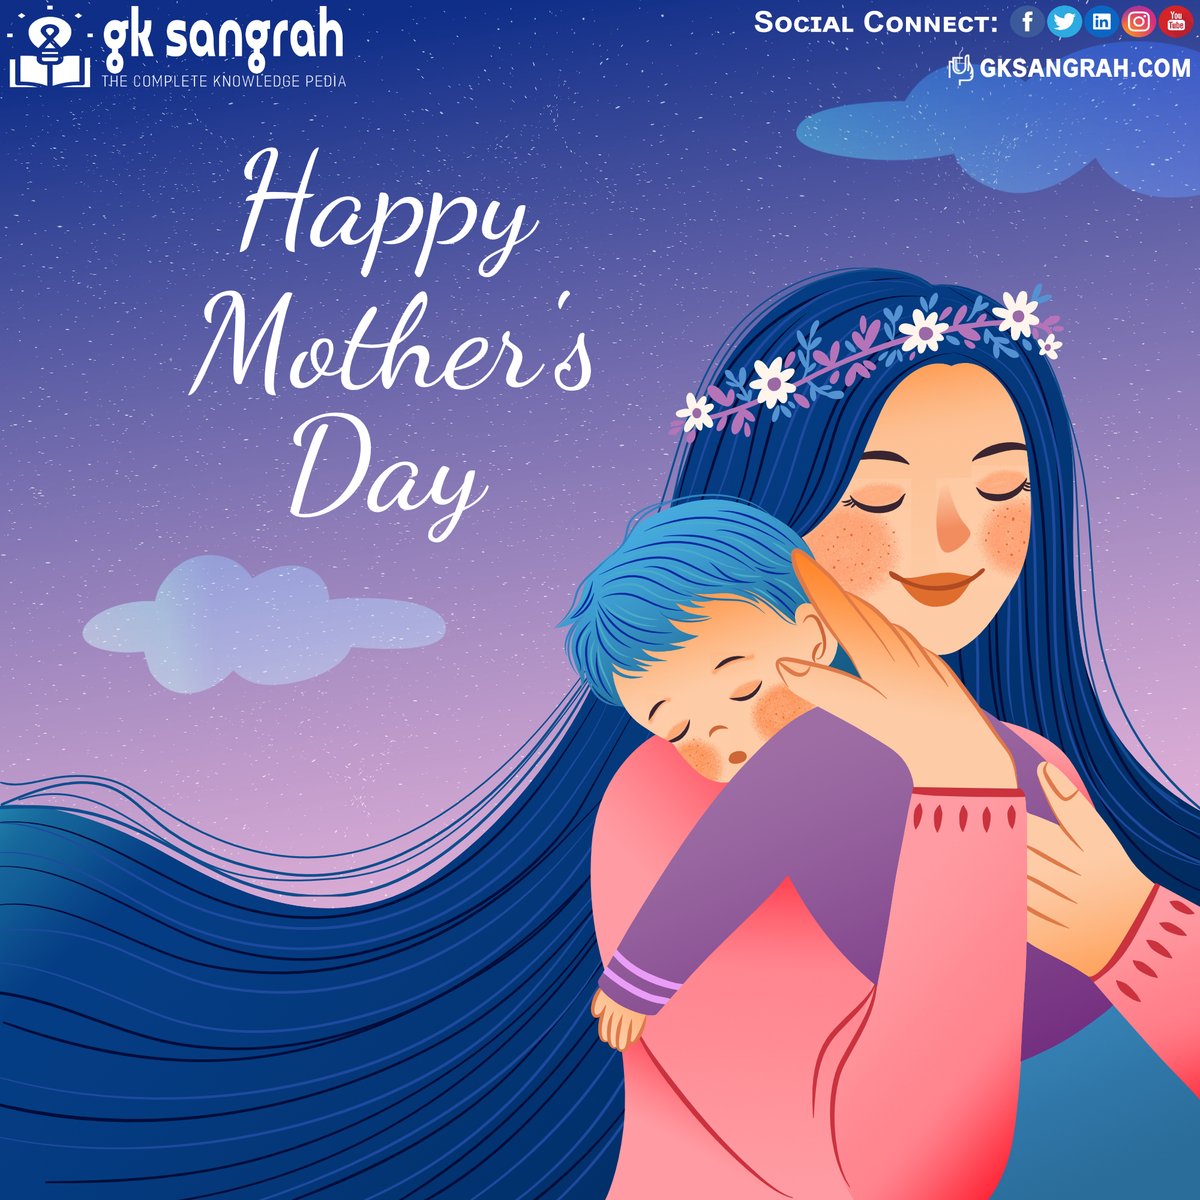 Gᴏᴅ ᴄᴏᴜʟᴅ ɴᴏᴛ ʙᴇ ᴇᴠᴇʀʏᴡʜᴇʀᴇ, ᴀɴᴅ ᴛʜᴇʀᴇғᴏʀᴇ ʜᴇ ᴍᴀᴅᴇ ᴍᴏᴛʜᴇʀs. Lᴇᴛ's ᴄᴇʟᴇʙʀᴀᴛᴇ ᴛʜᴇ ᴘᴜʀᴇsᴛ ғᴏʀᴍ ᴏғ ᴜɴᴄᴏɴᴅɪᴛɪᴏɴᴀʟ ʟᴏᴠᴇ. Hᴀᴘᴘʏ Mᴏᴛʜᴇʀ's Dᴀʏ!

#HappyMothersDay #MotherLove #GeneralKnowledge #GKInHindi #TextToSpeechWebsite